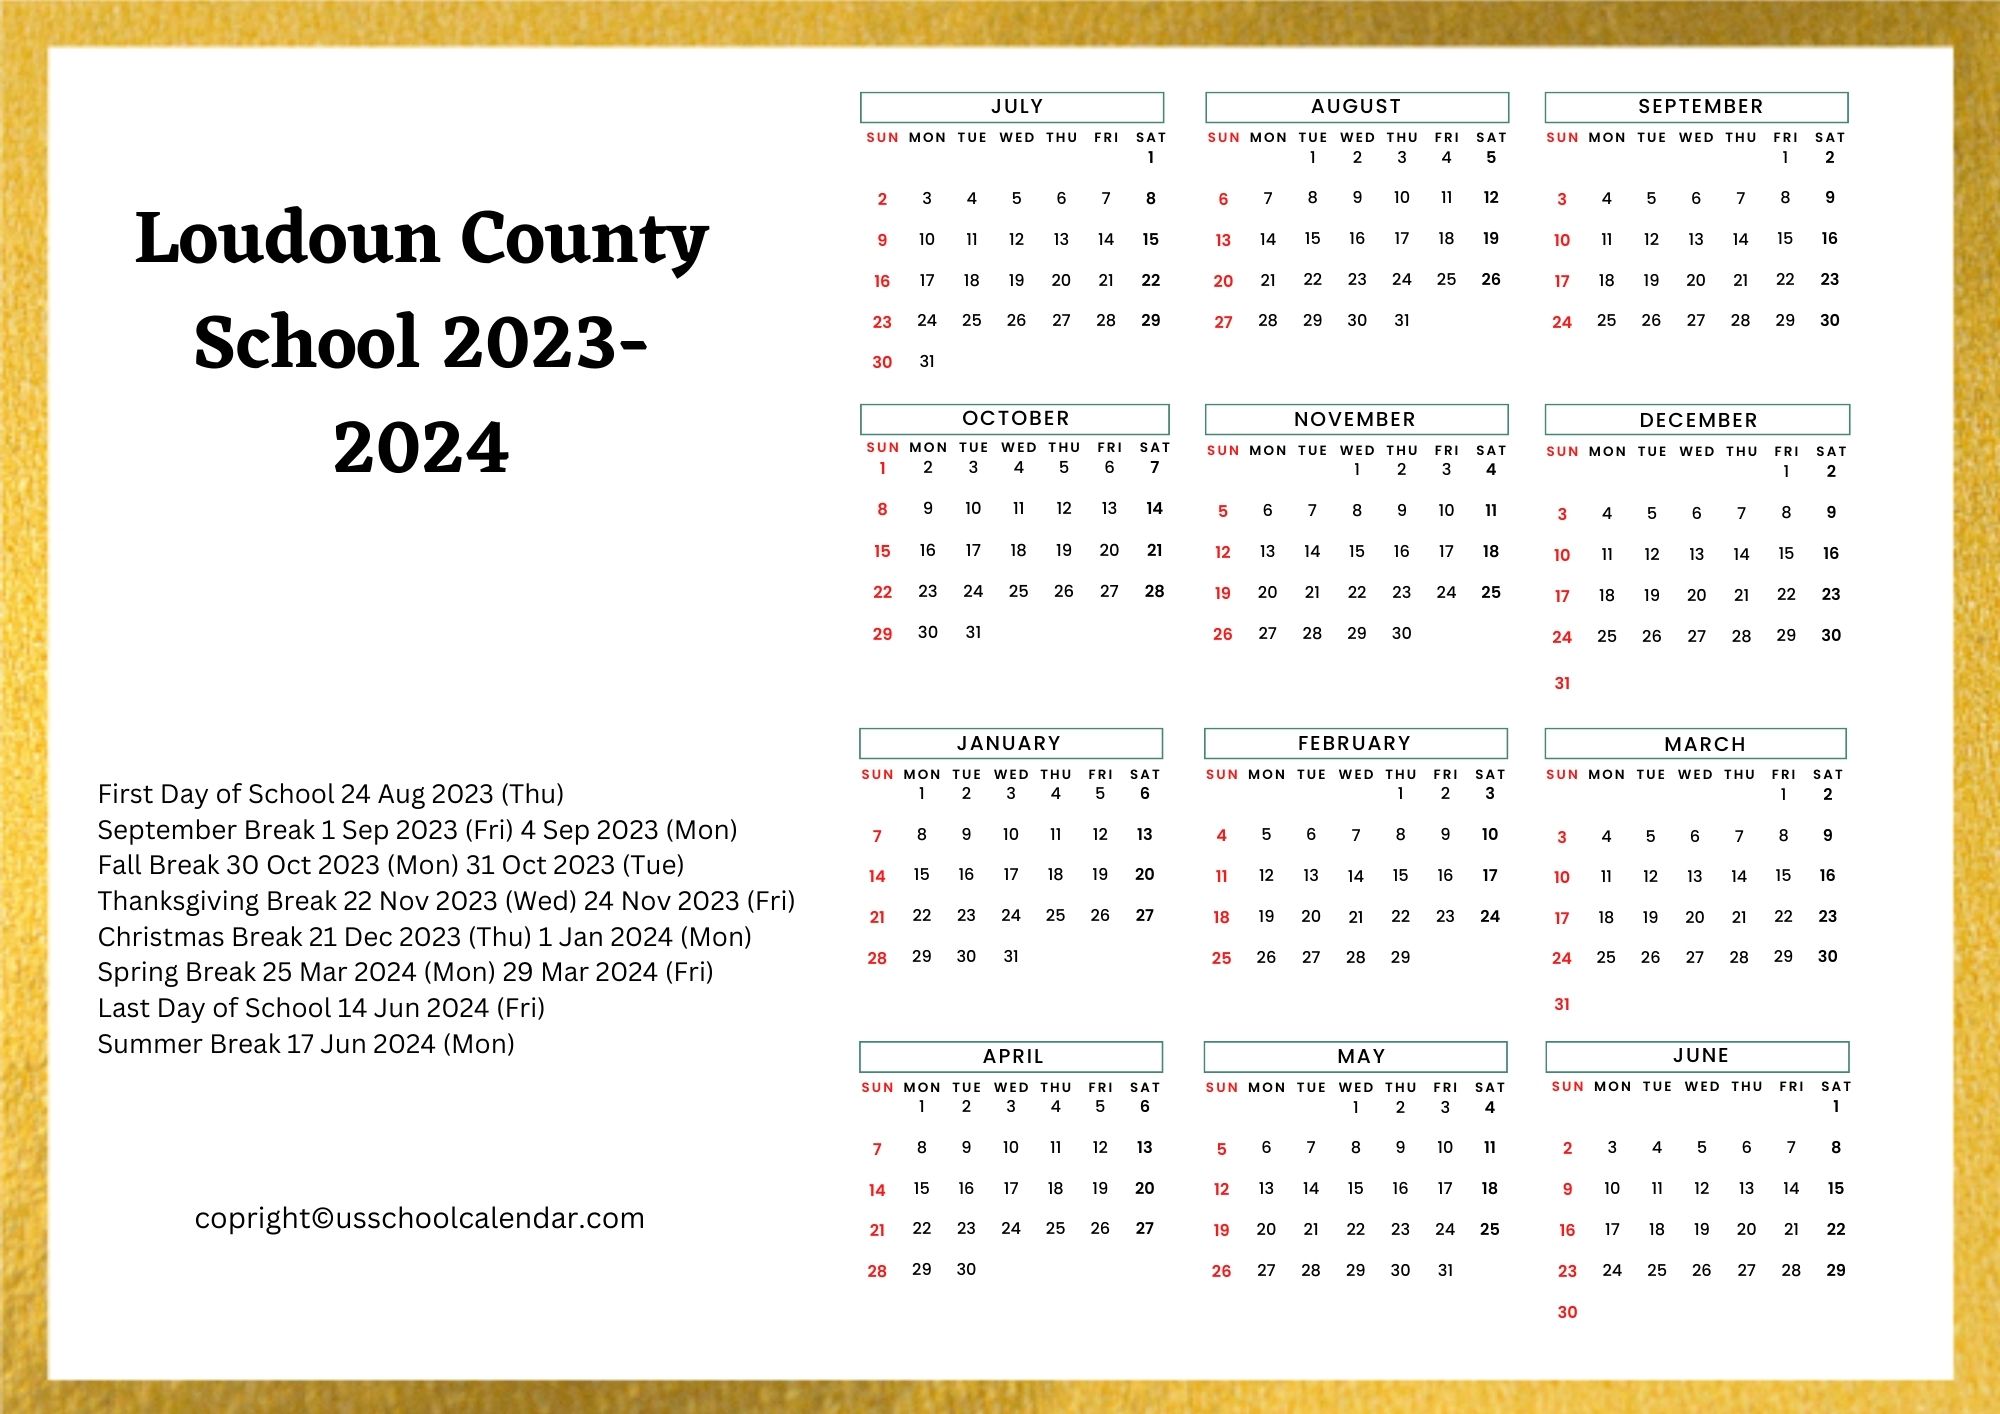 loudoun-county-school-calendar-holidays-2023-2024-lcps